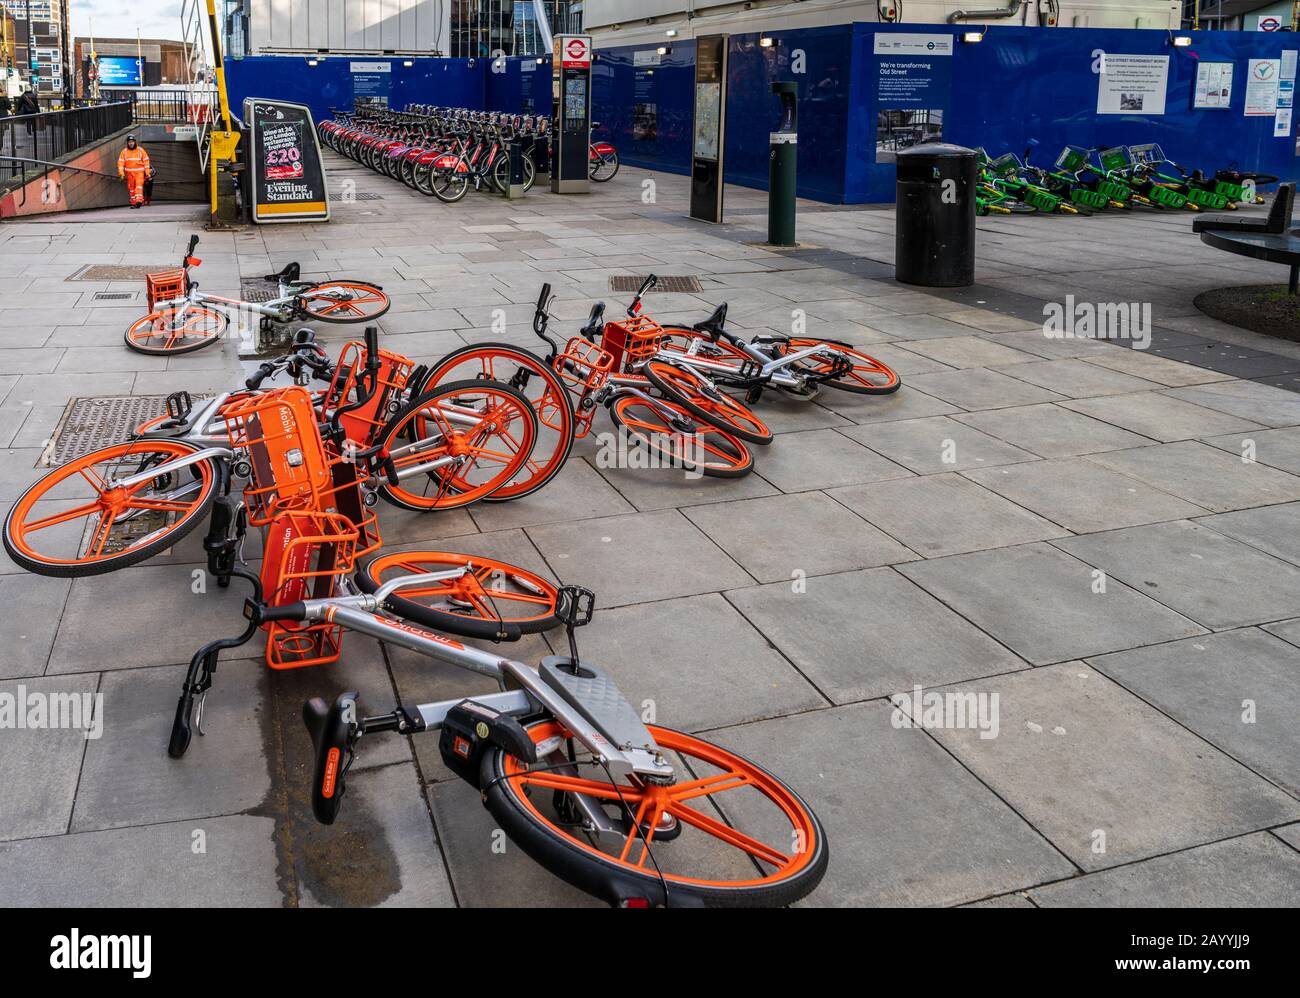 Noleggio Di Dockless In Bicicletta A Londra. Uno svantaggio delle bici dockless di noleggio è la loro vulnerabilità ai venti alti quando parcheggiati sulla strada. Moto ormeggiate dietro. Foto Stock